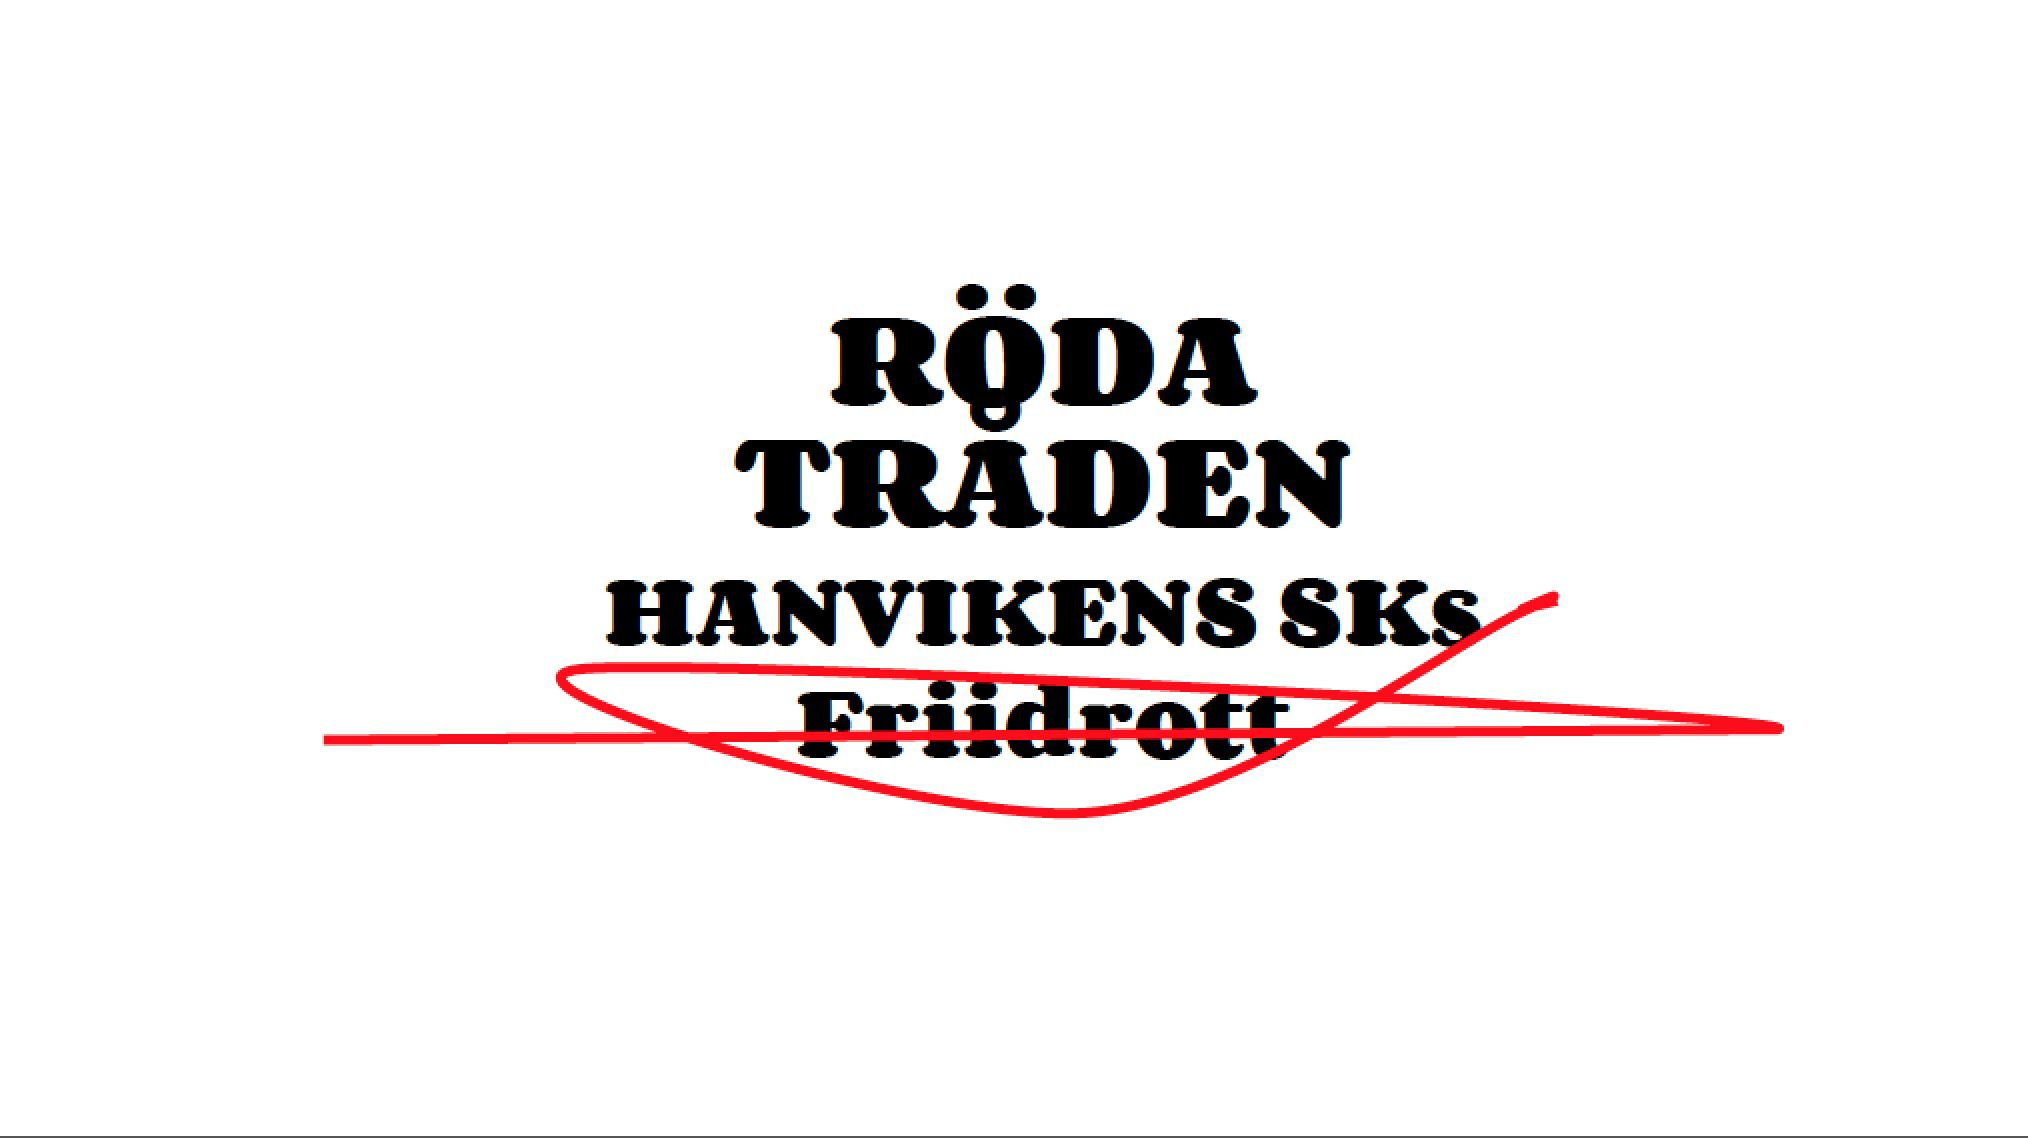 HSK s Friidrotts Röda tråd Detta dokument är vårt gemensamma styrdokument för verksamheten och något som alla aktiva, ledare och